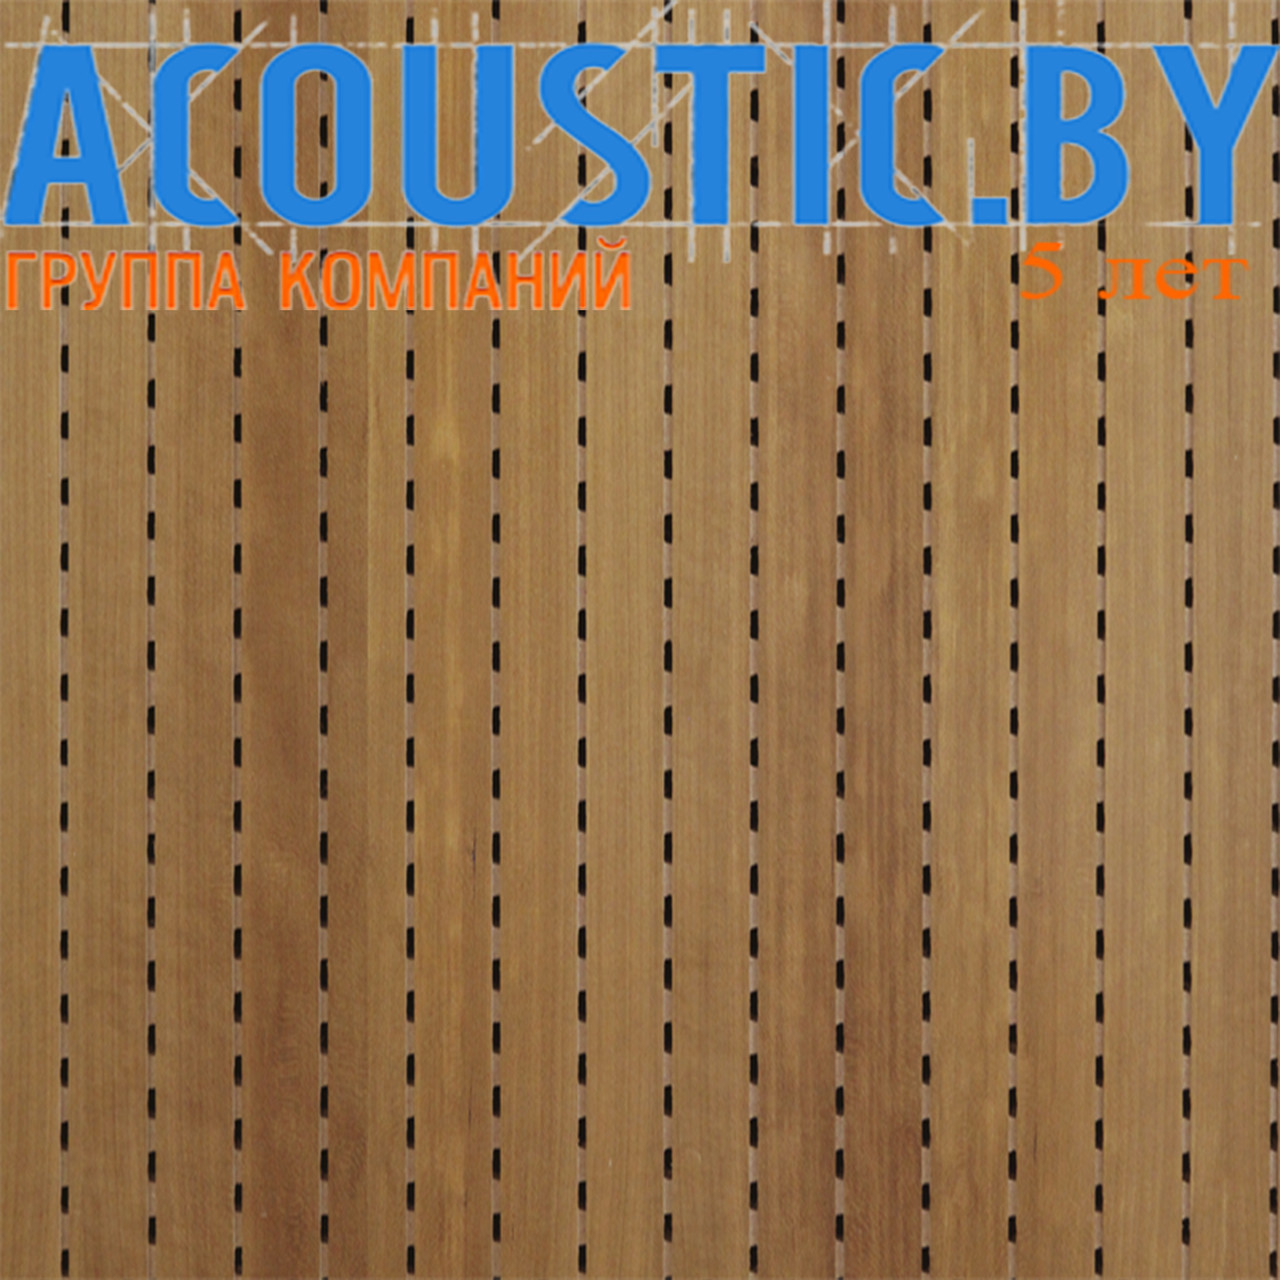 Акустические панели Decor Acoustic натур.шпон вишни